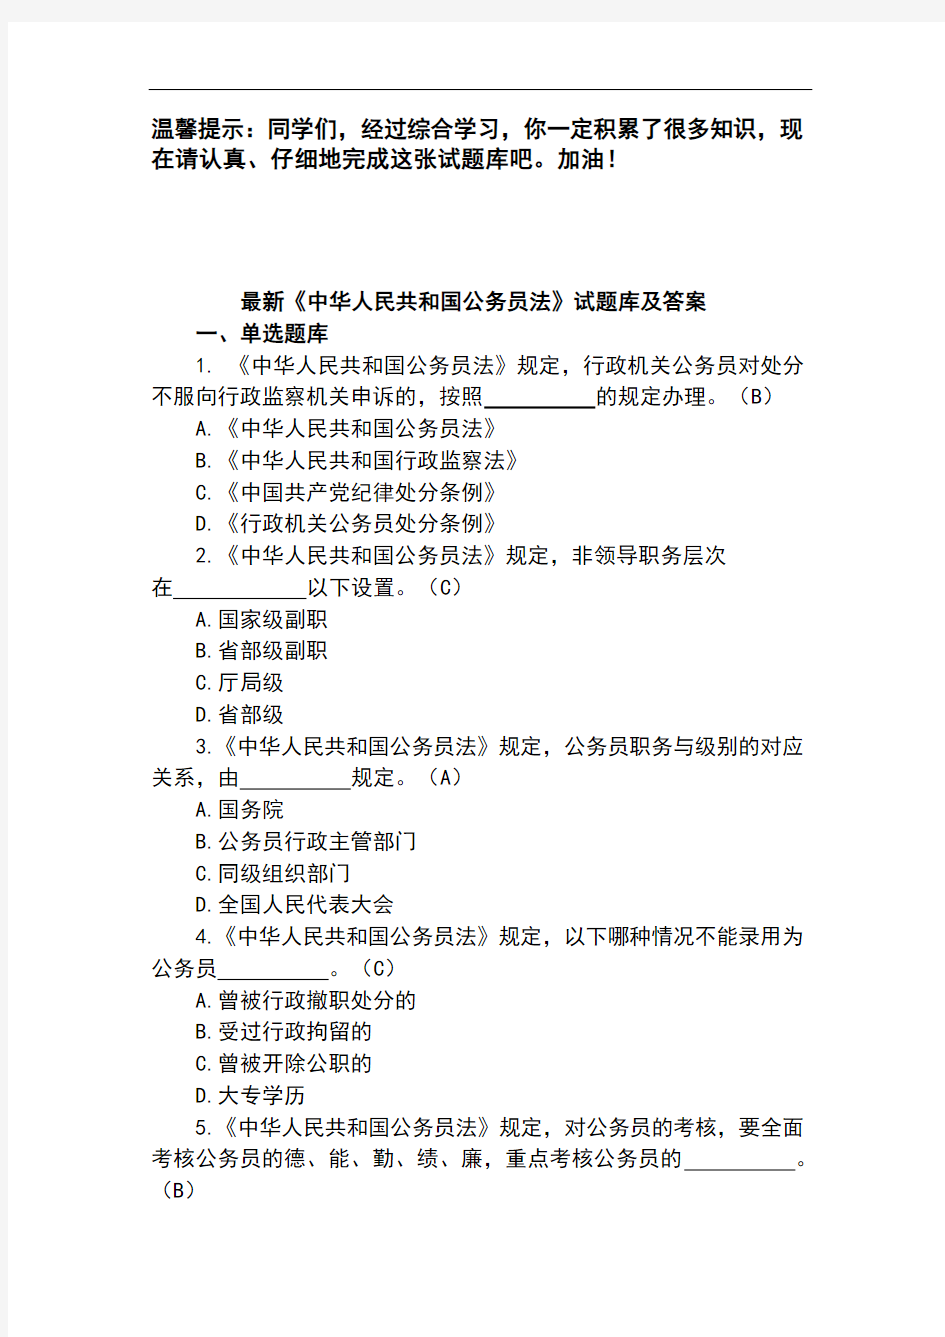 最新《中华人民共和国公务员法》试题库及答案